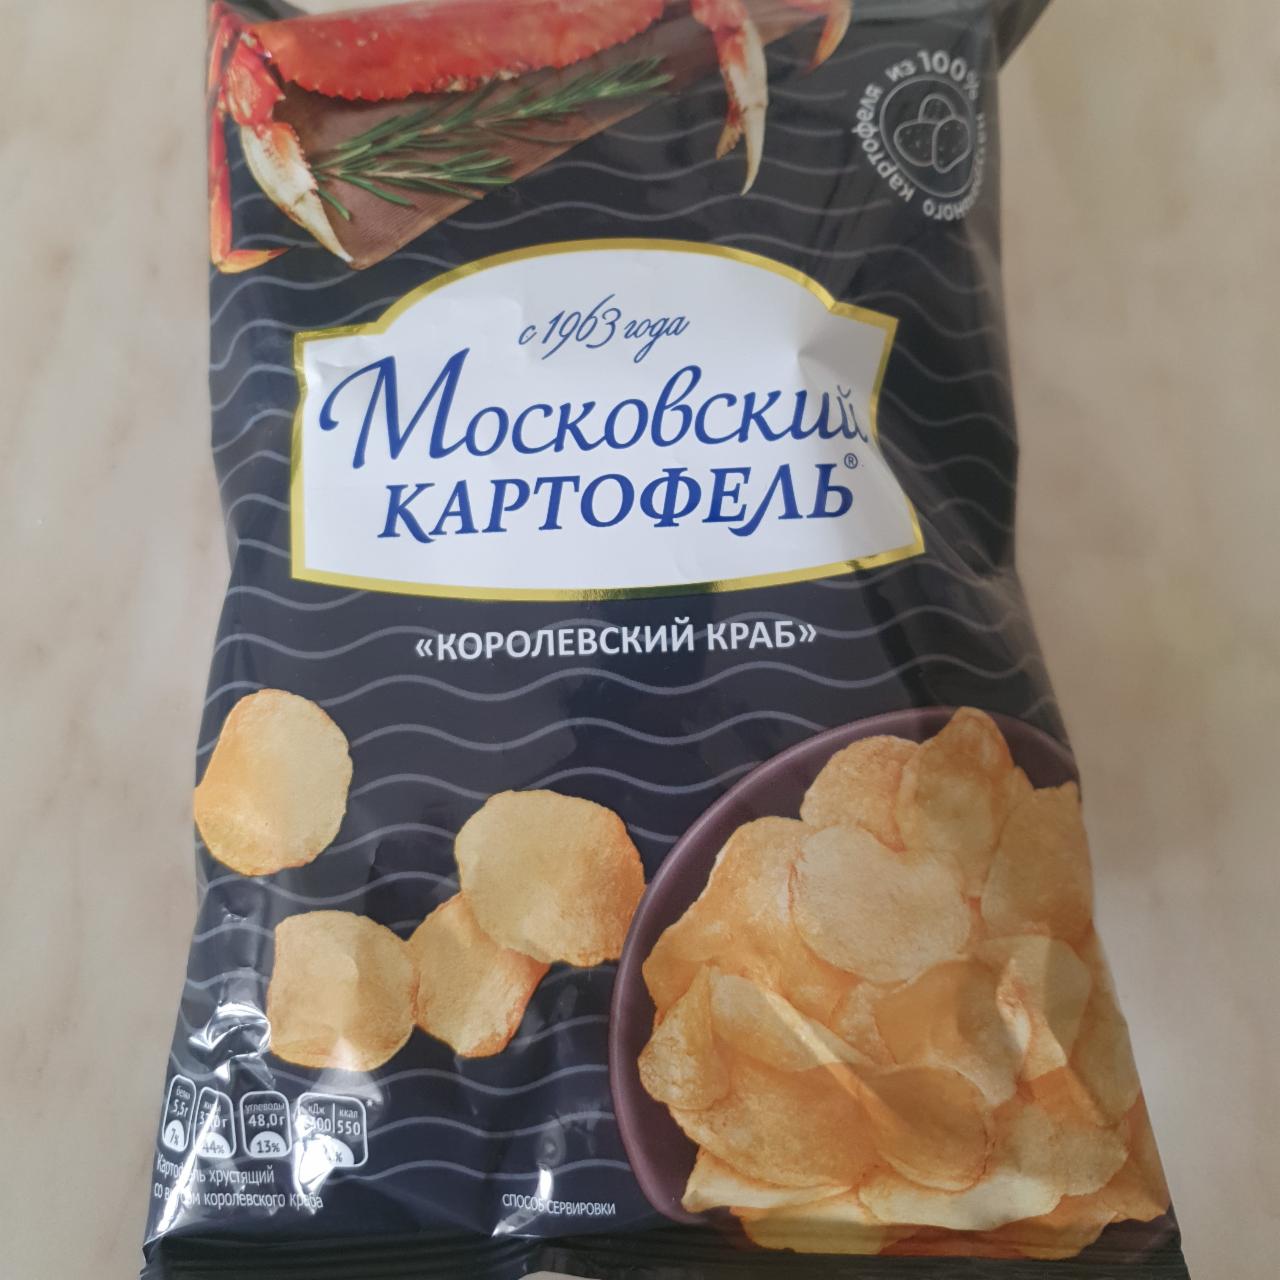 Фото - Чипсы Королевский краб Московский картофель